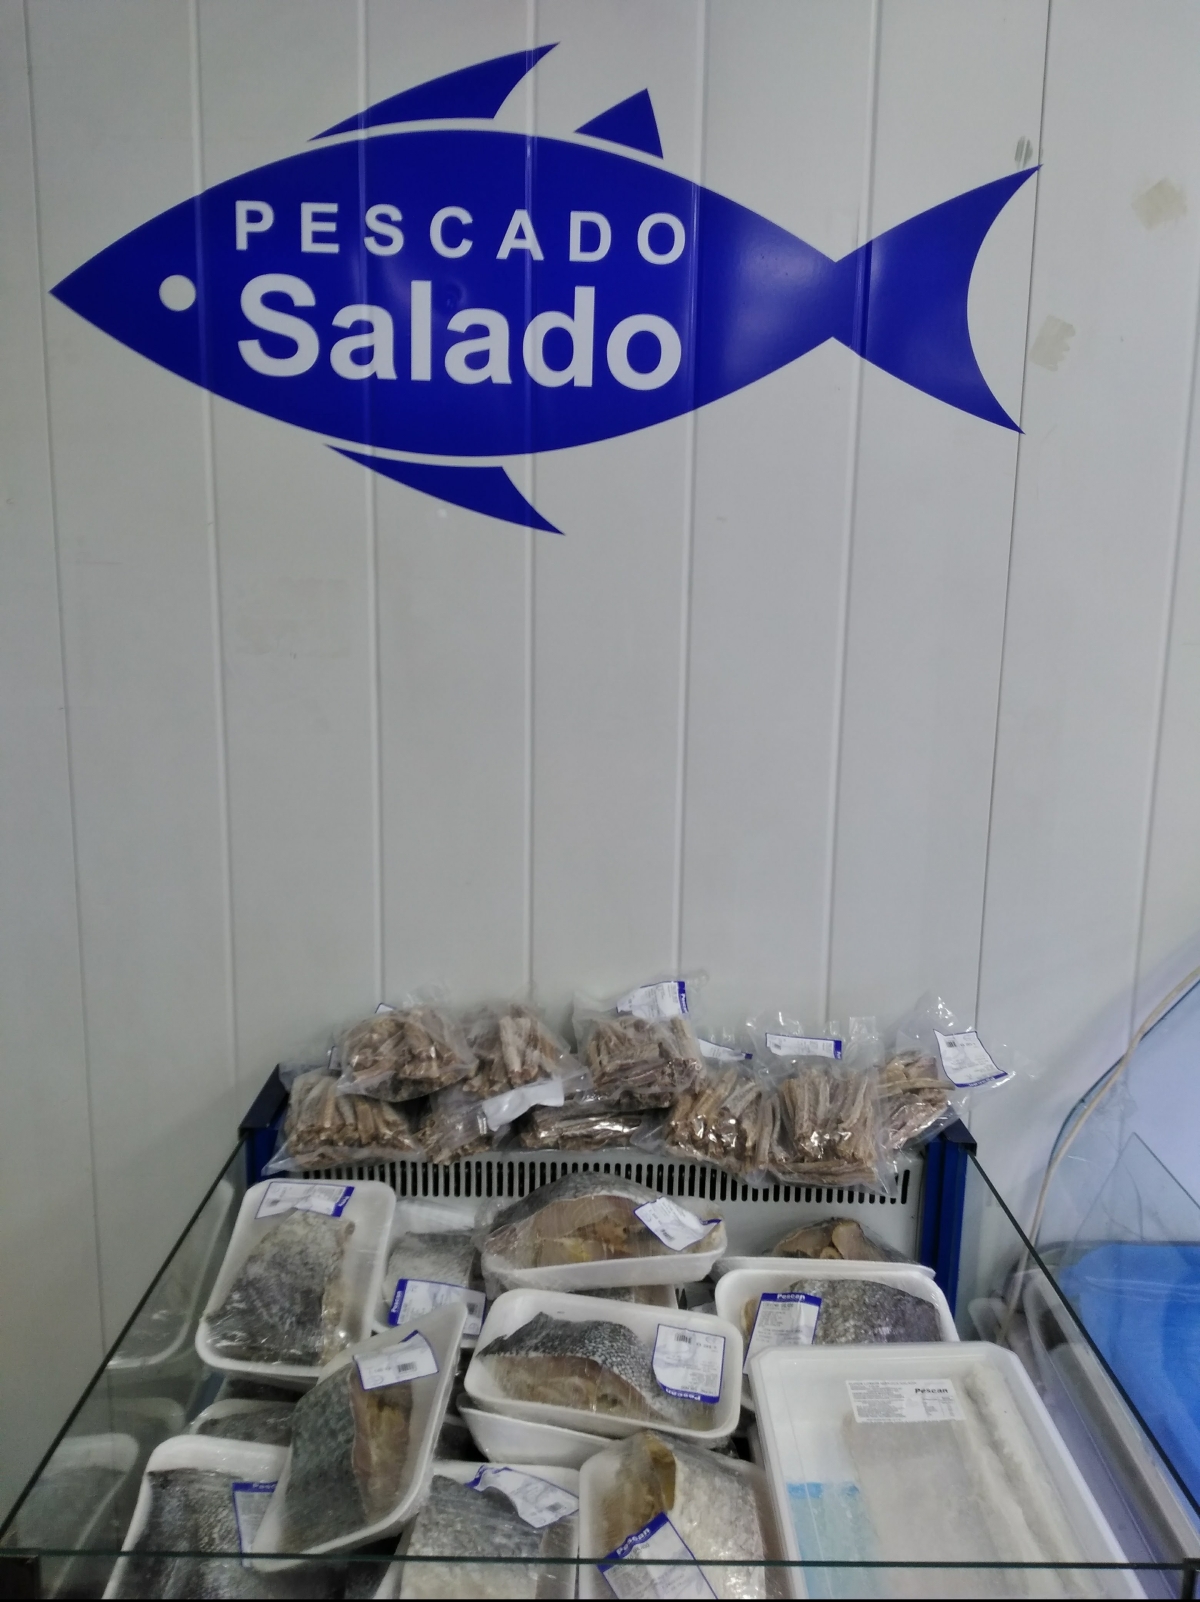 Pescado Salado. Sabores del mar en tu mesa